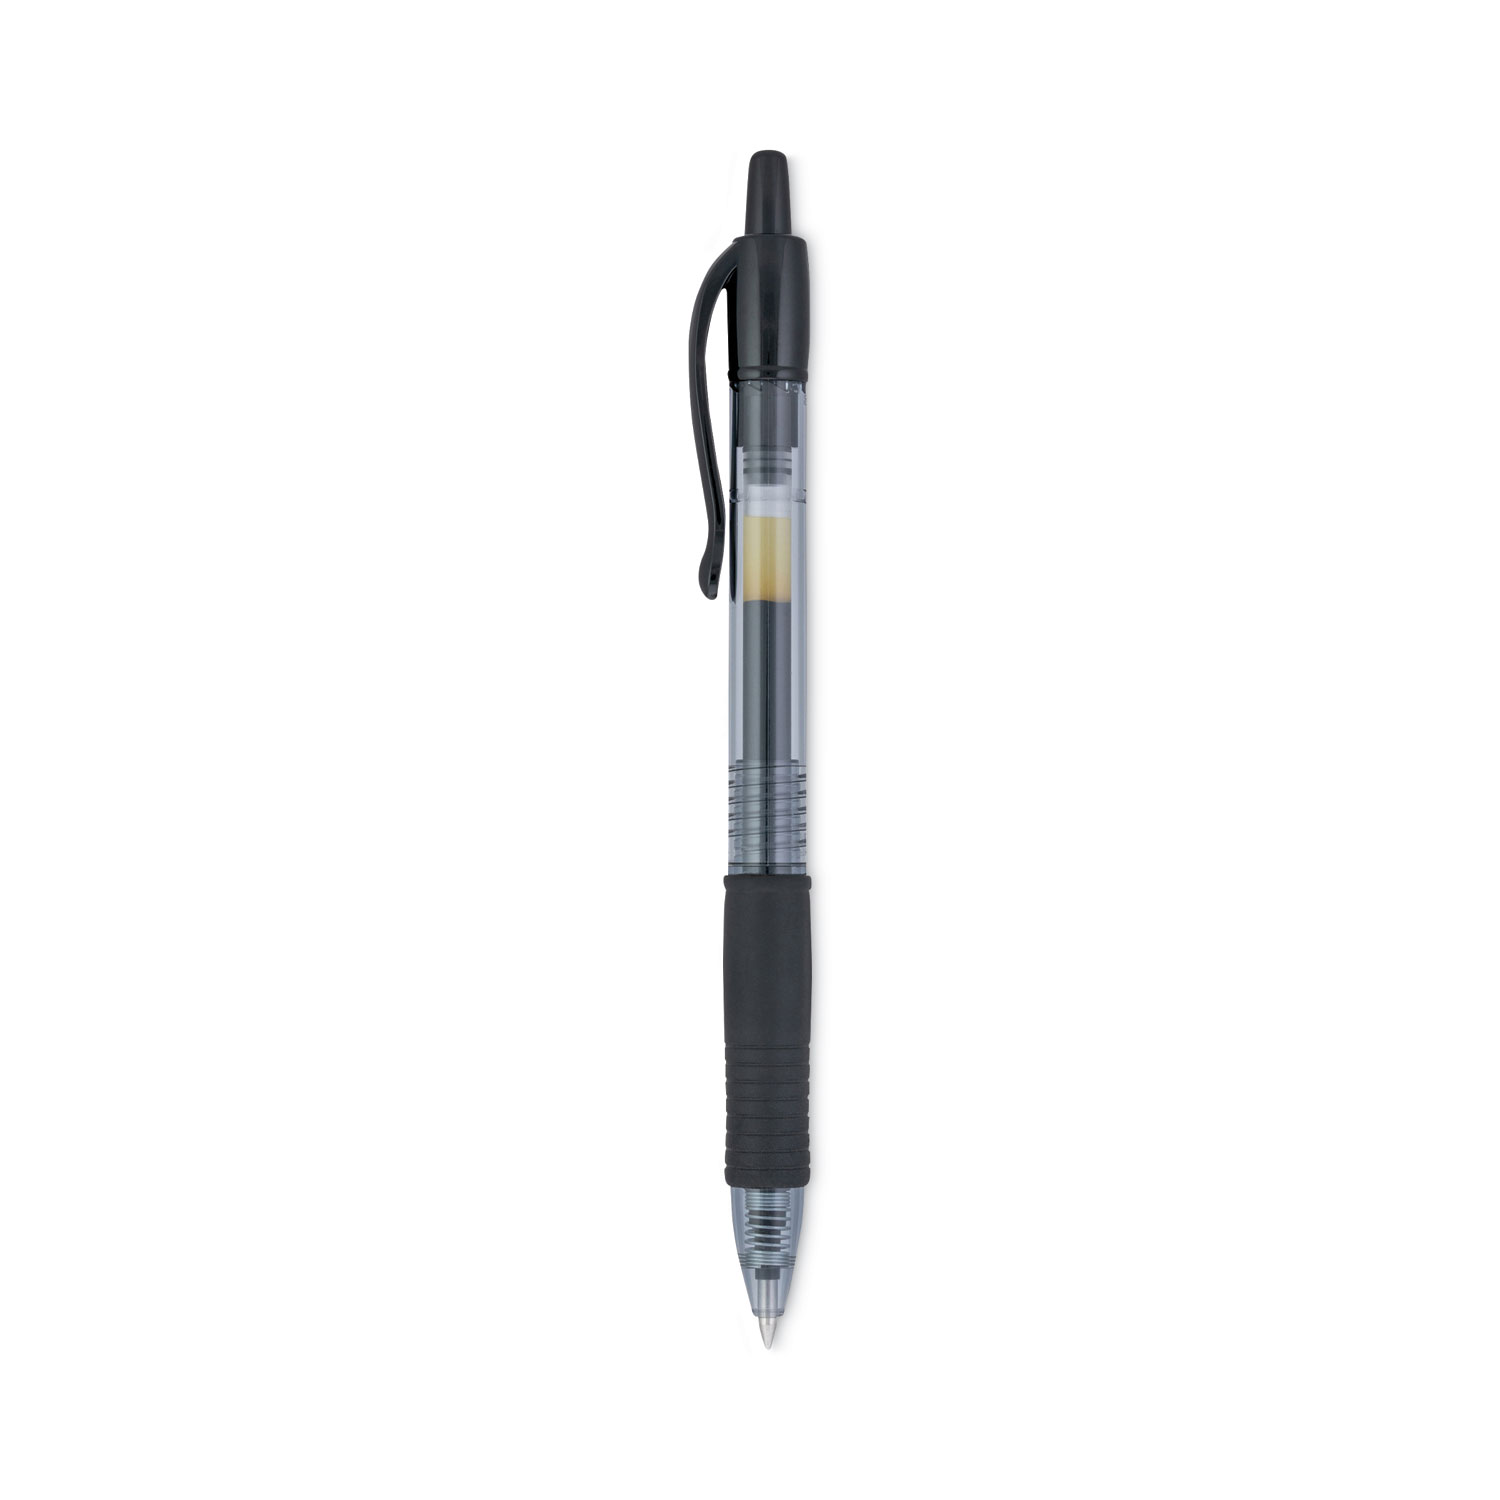 Pilot Ultra Fine Point Gel Pens Black Ink 0.38 mm (2 ct) Delivery